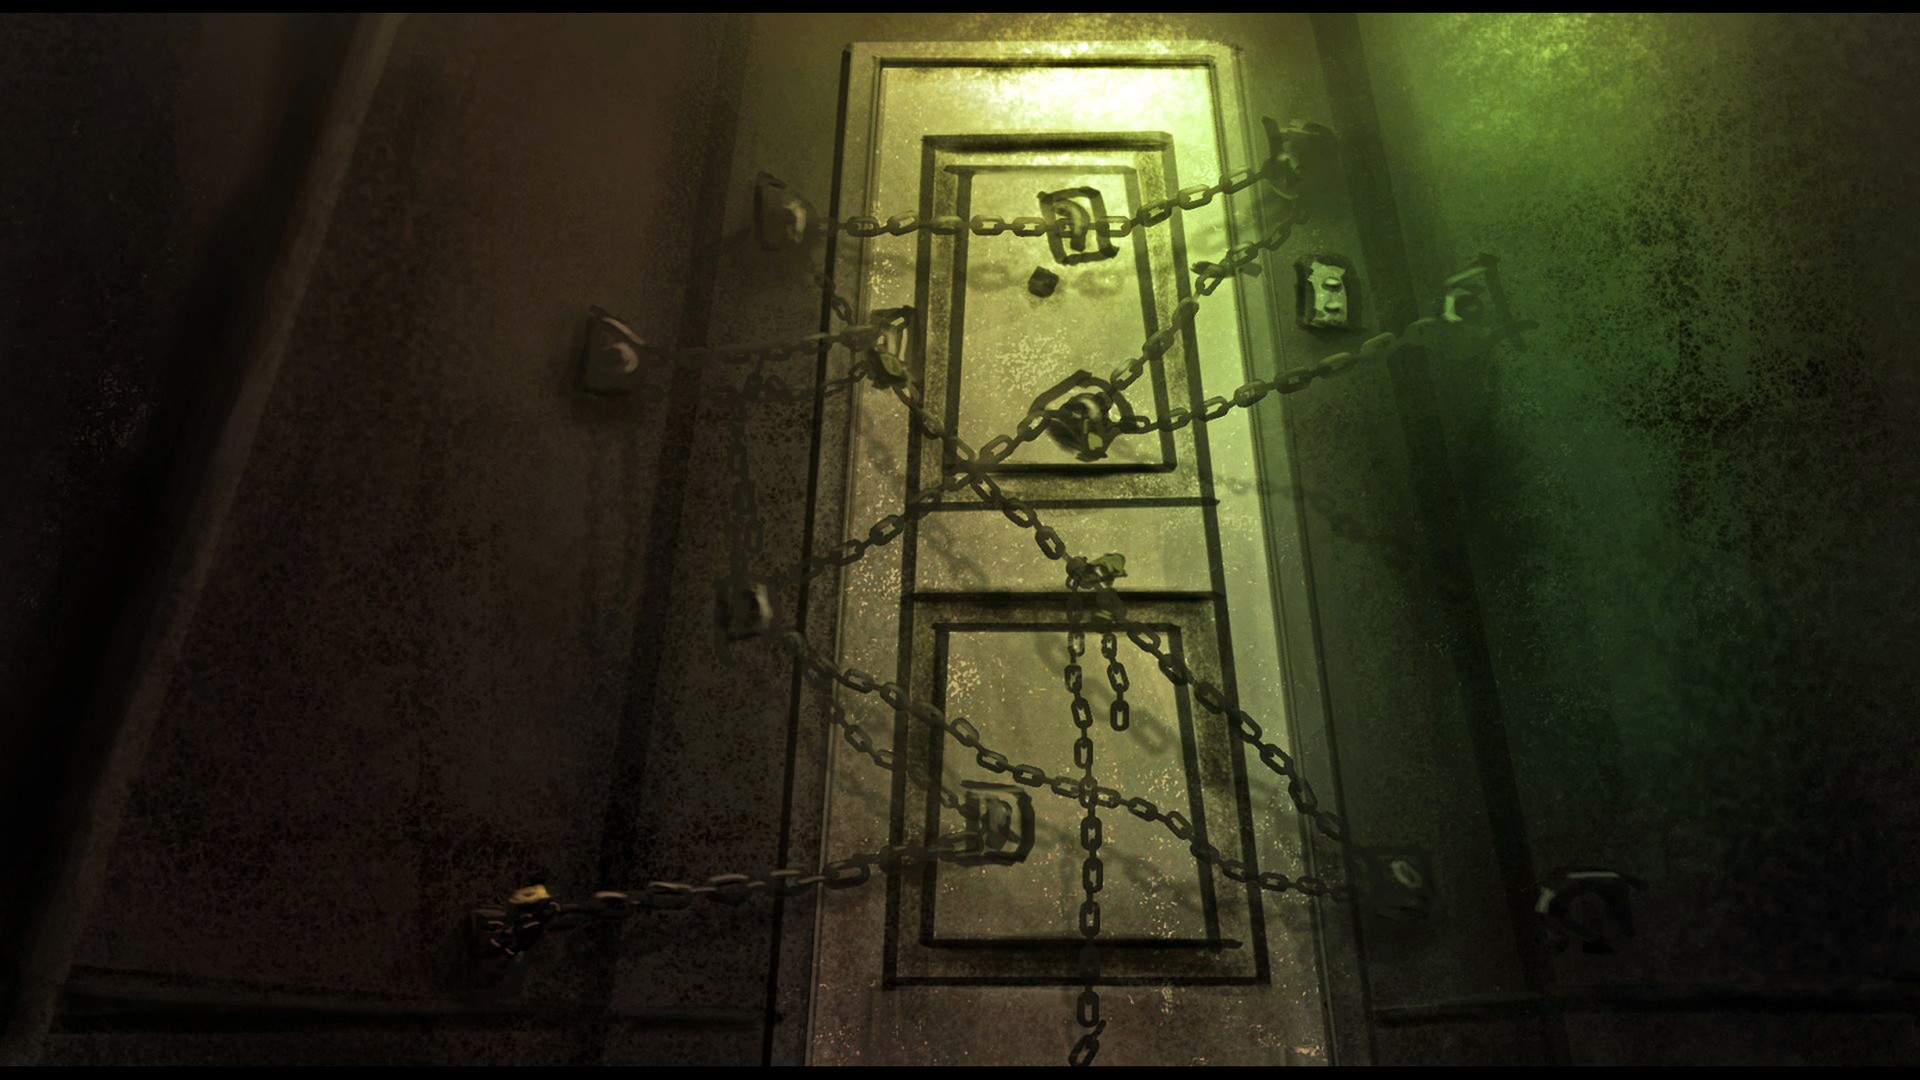 Wallpaper - Silent Hill 4 Wallpaper 1080p , HD Wallpaper & Backgrounds